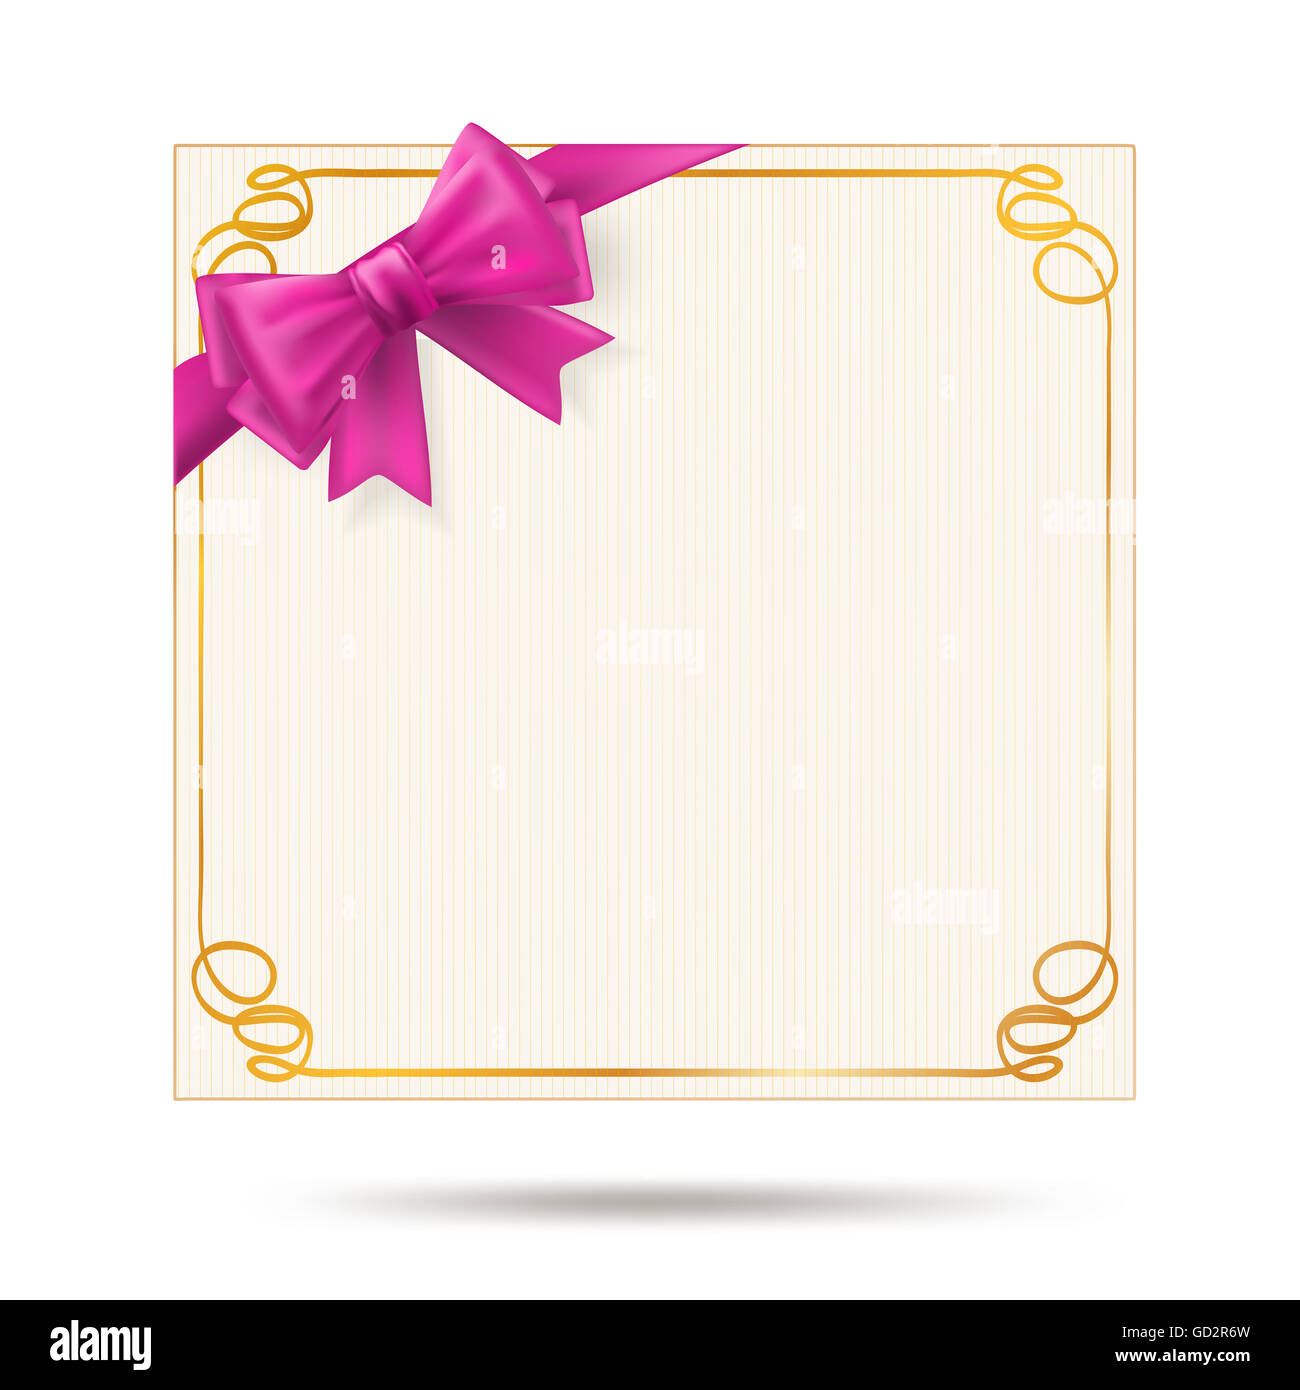 Tarjeta de regalo con golden swirl Pink Ribbon y bastidor Foto de stock